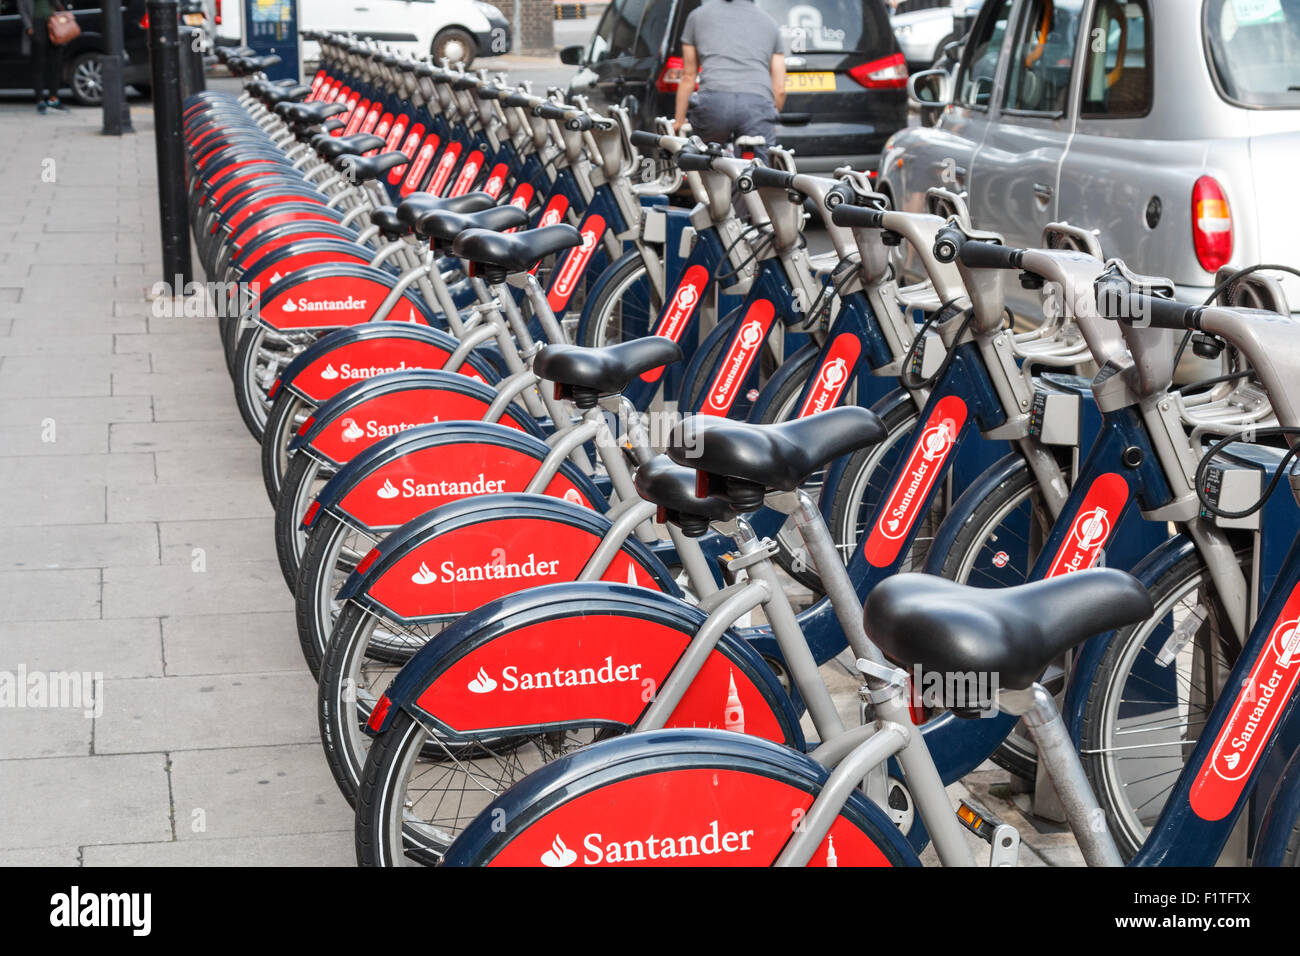 Location de vélos pour la ville de Londres. Connu sous le nom de Boris bikes ces parrainage de Santander. Banque D'Images